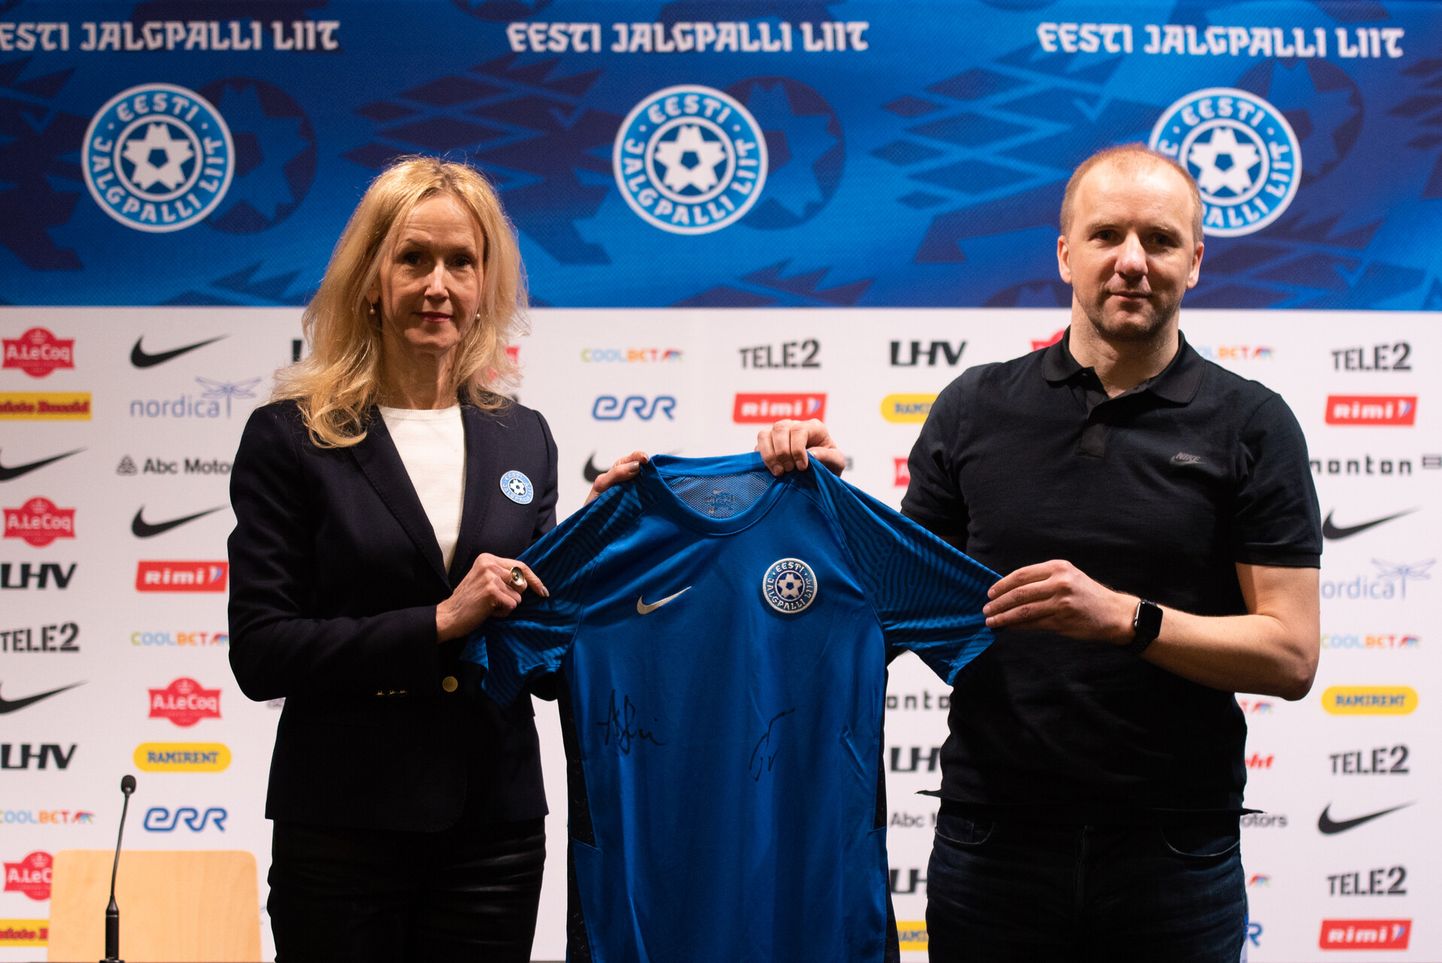 Anne Rei ja Rainer Tops hoidmas käes Eesti jalgpallikoondise uut mängusärki.